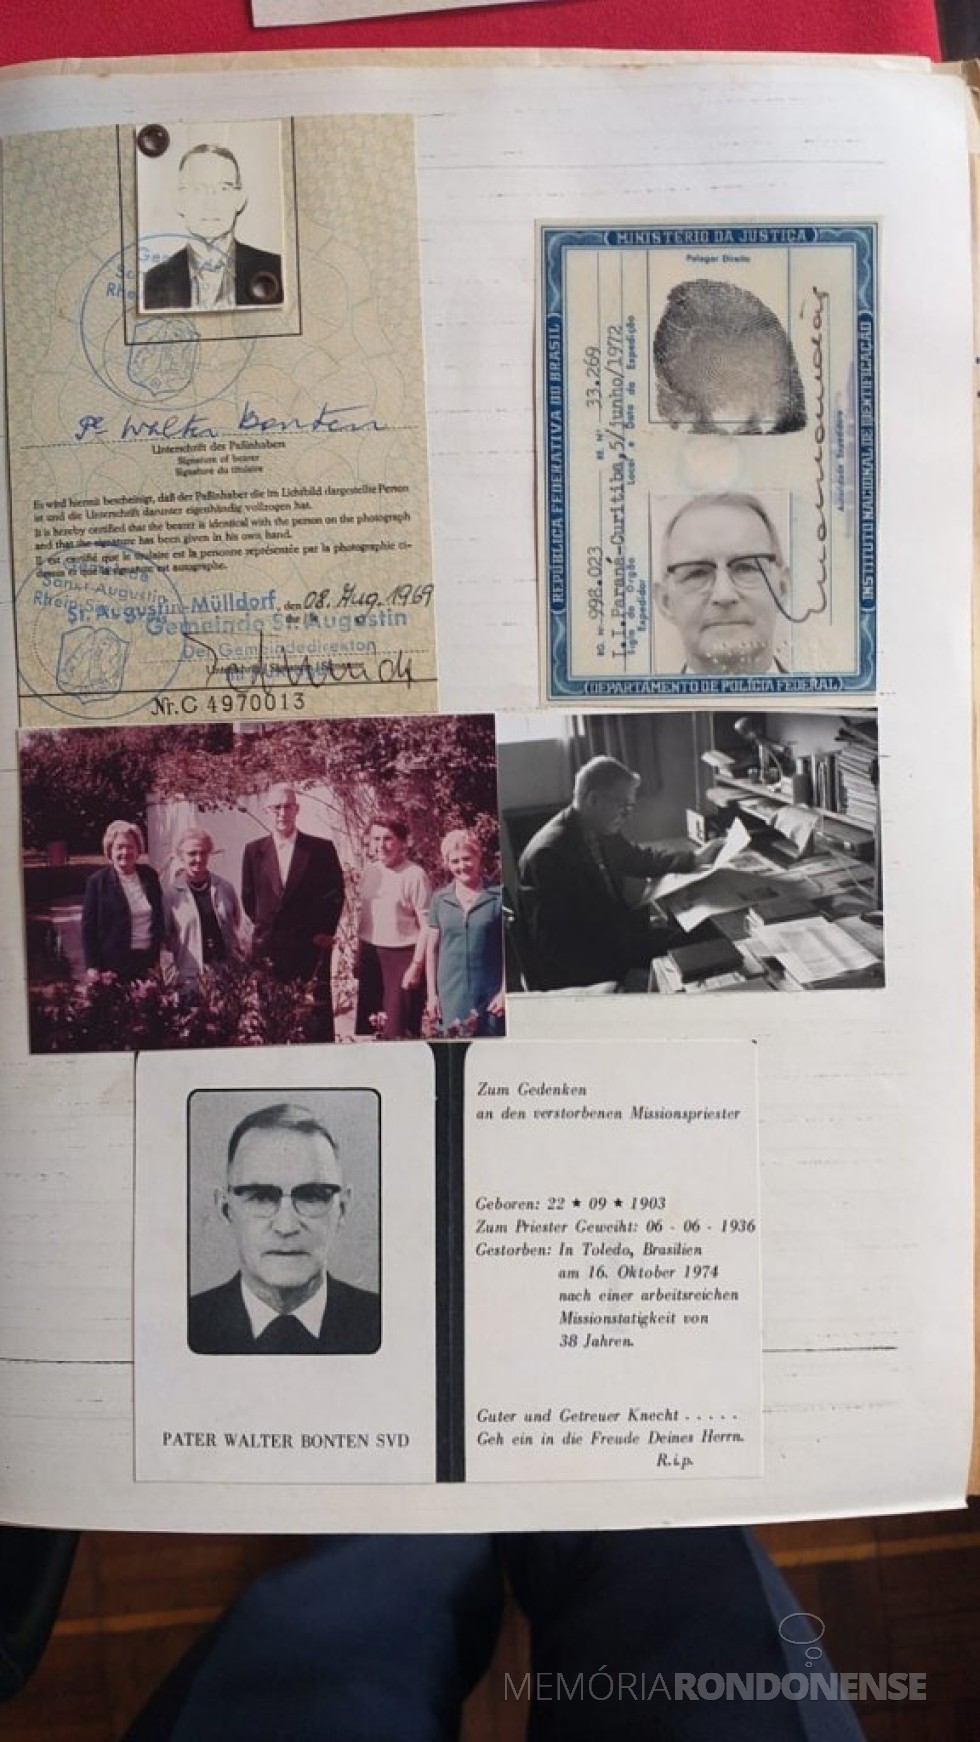 || Referências documentais de padre Walter Bonten SVD, falecido em outubro de 1974.
Imagem: Acervo Provincialado Verbo Divino Sul (Curitiba) - FOTO 2 - 